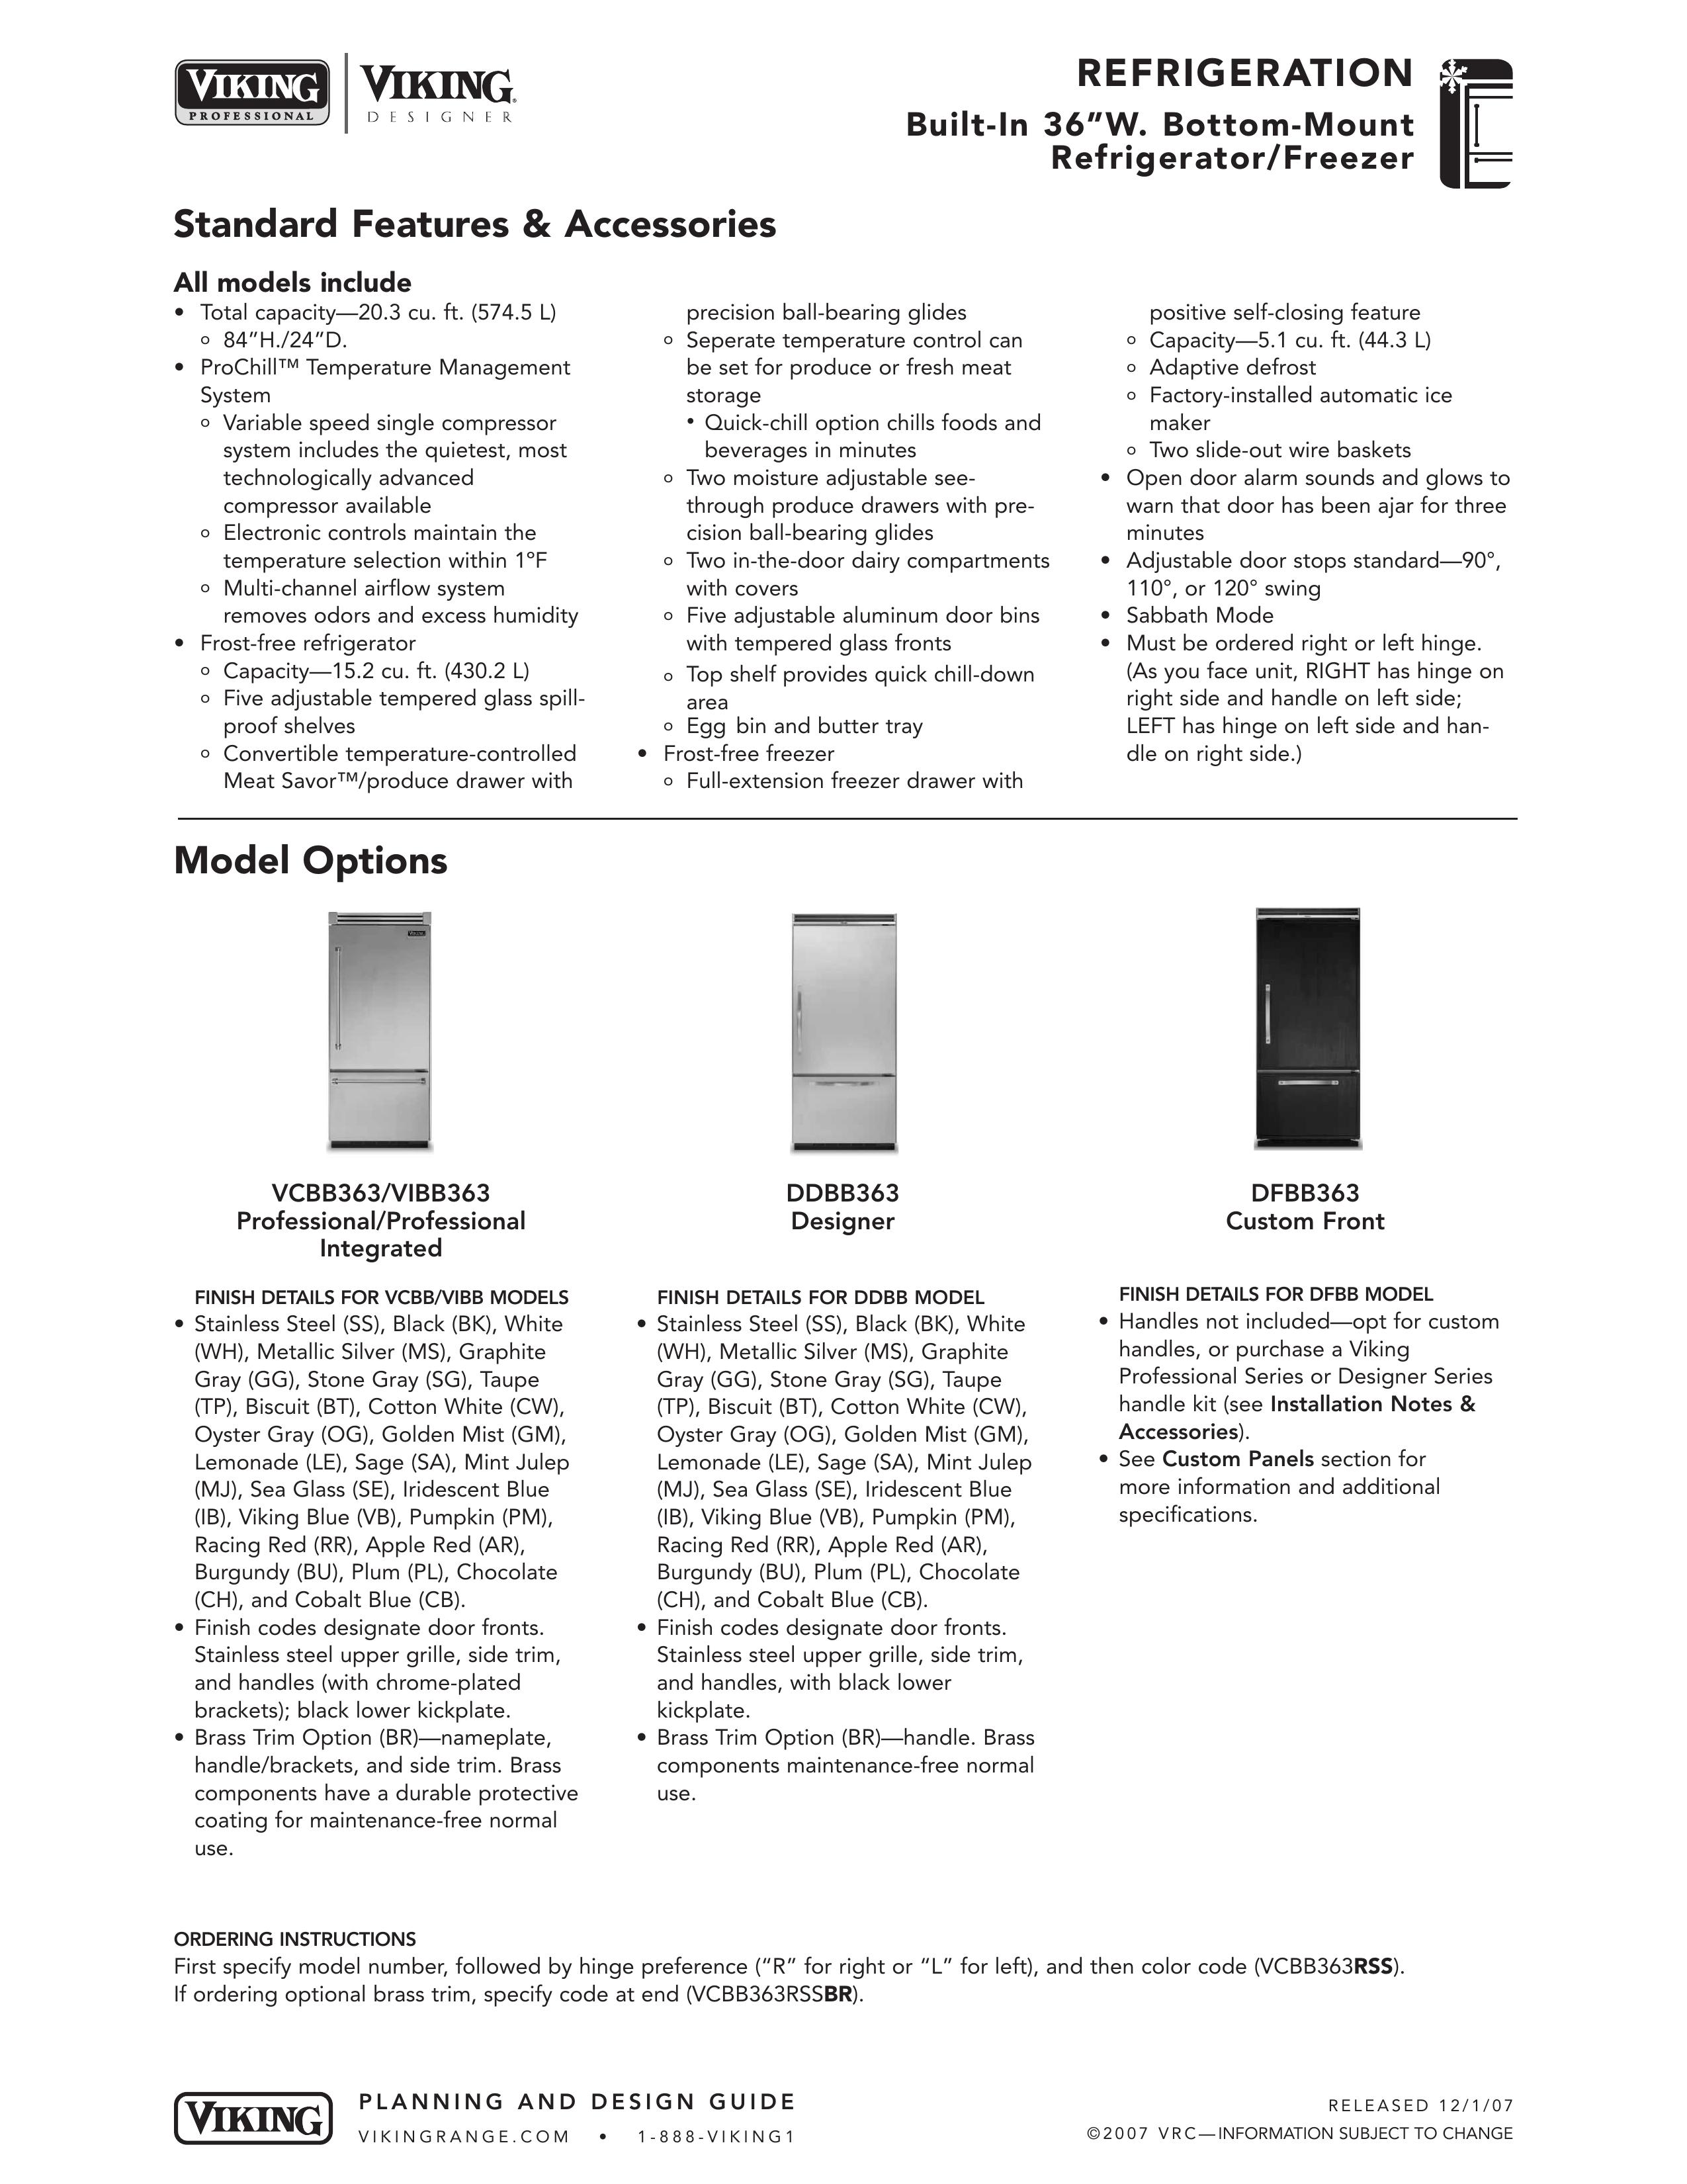 Viking DDBB363 Refrigerator User Manual